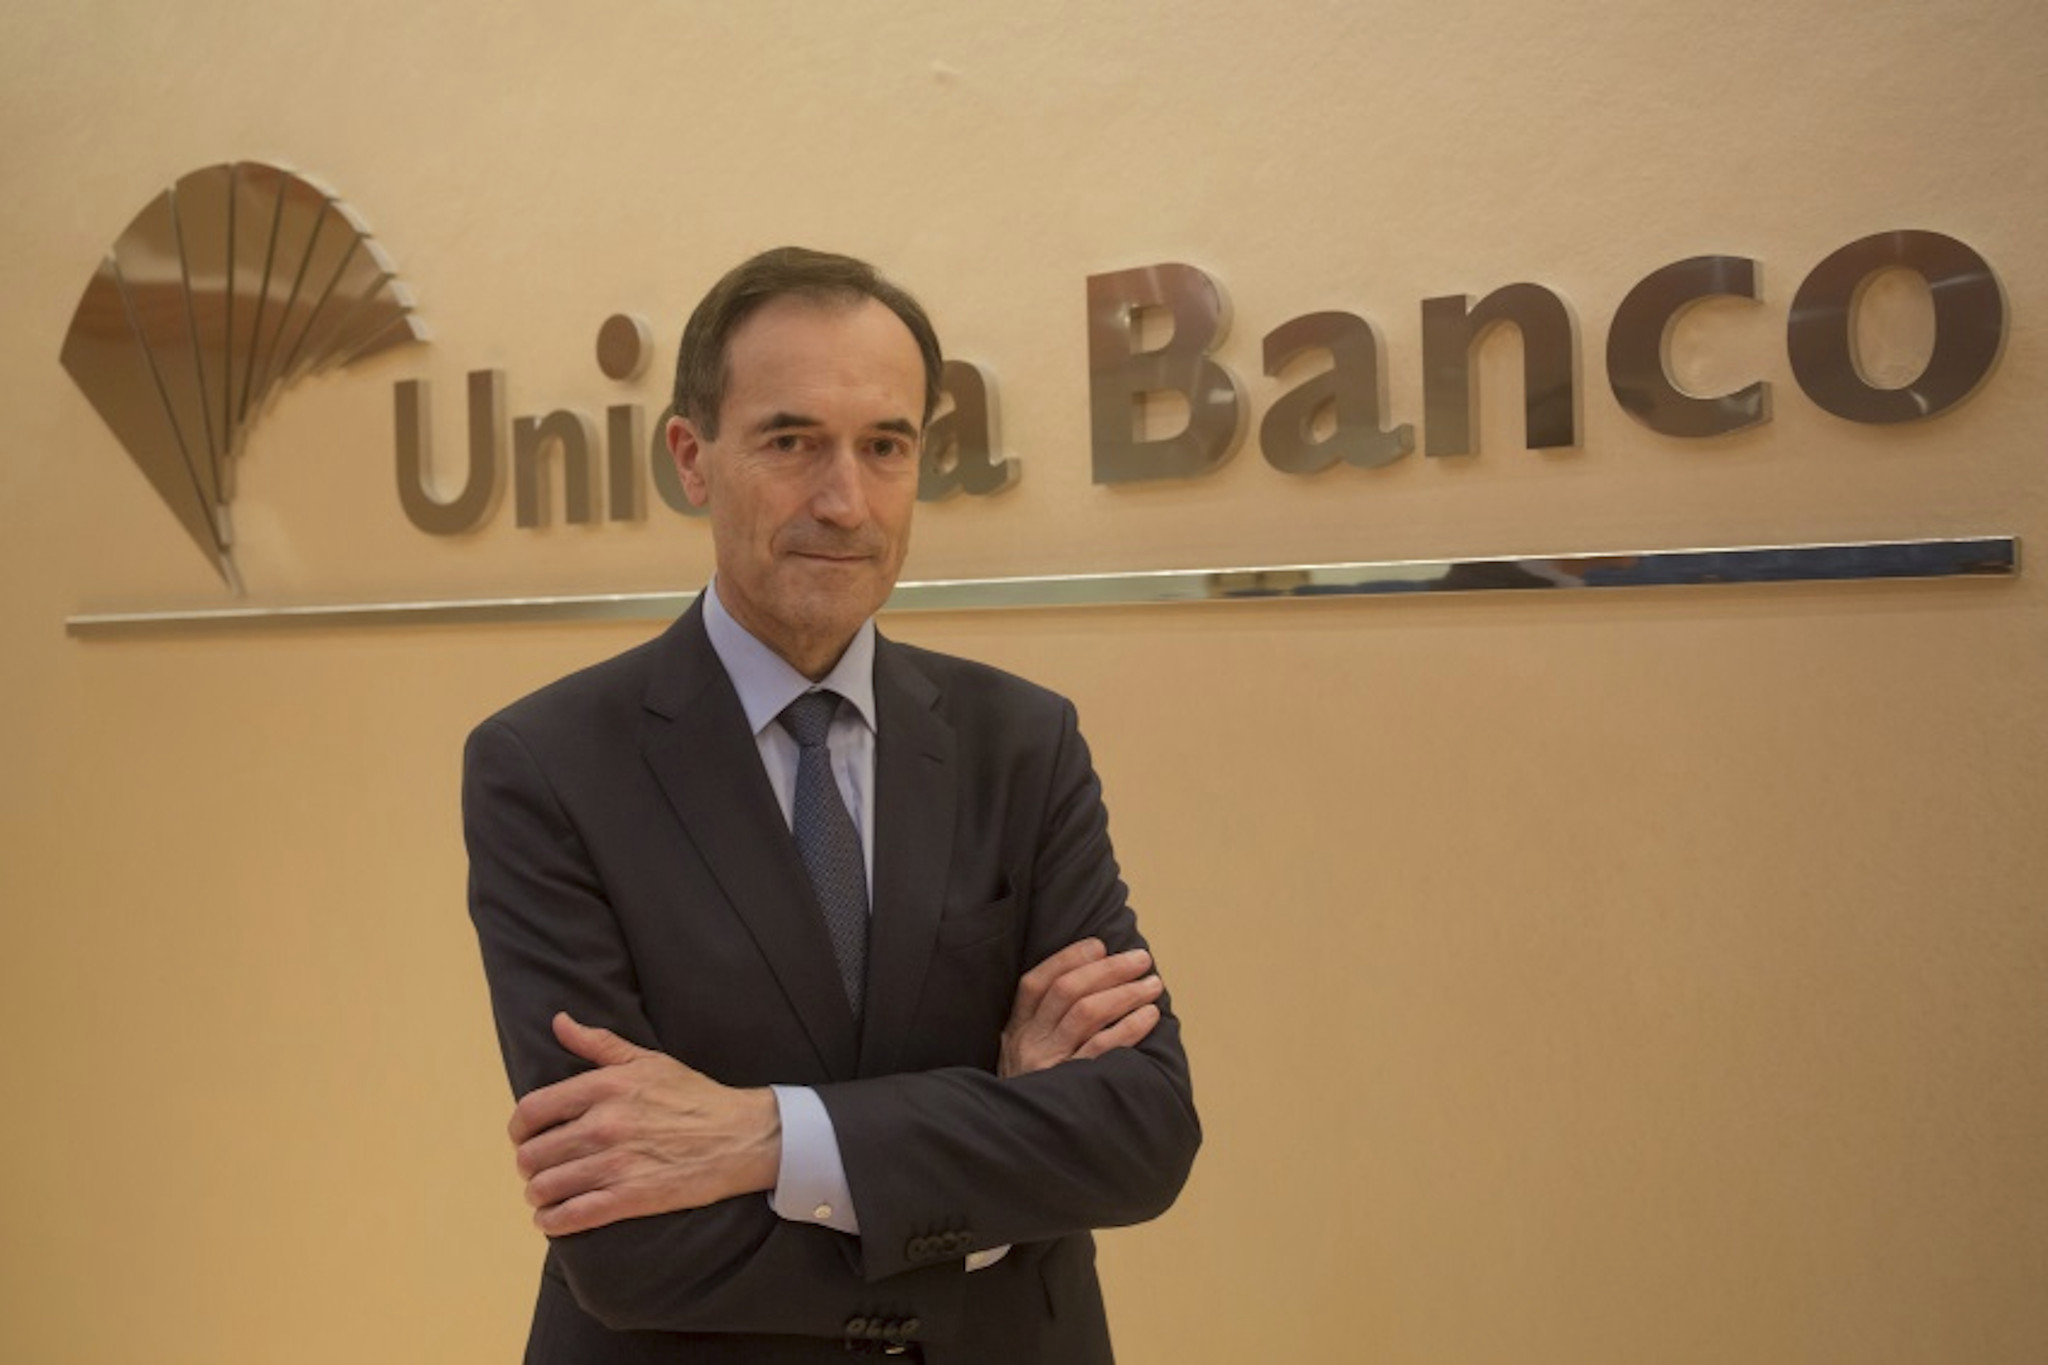 Menéndez cede su cargo de CEO en Unicaja tras pactar un millón de euros de indemnización